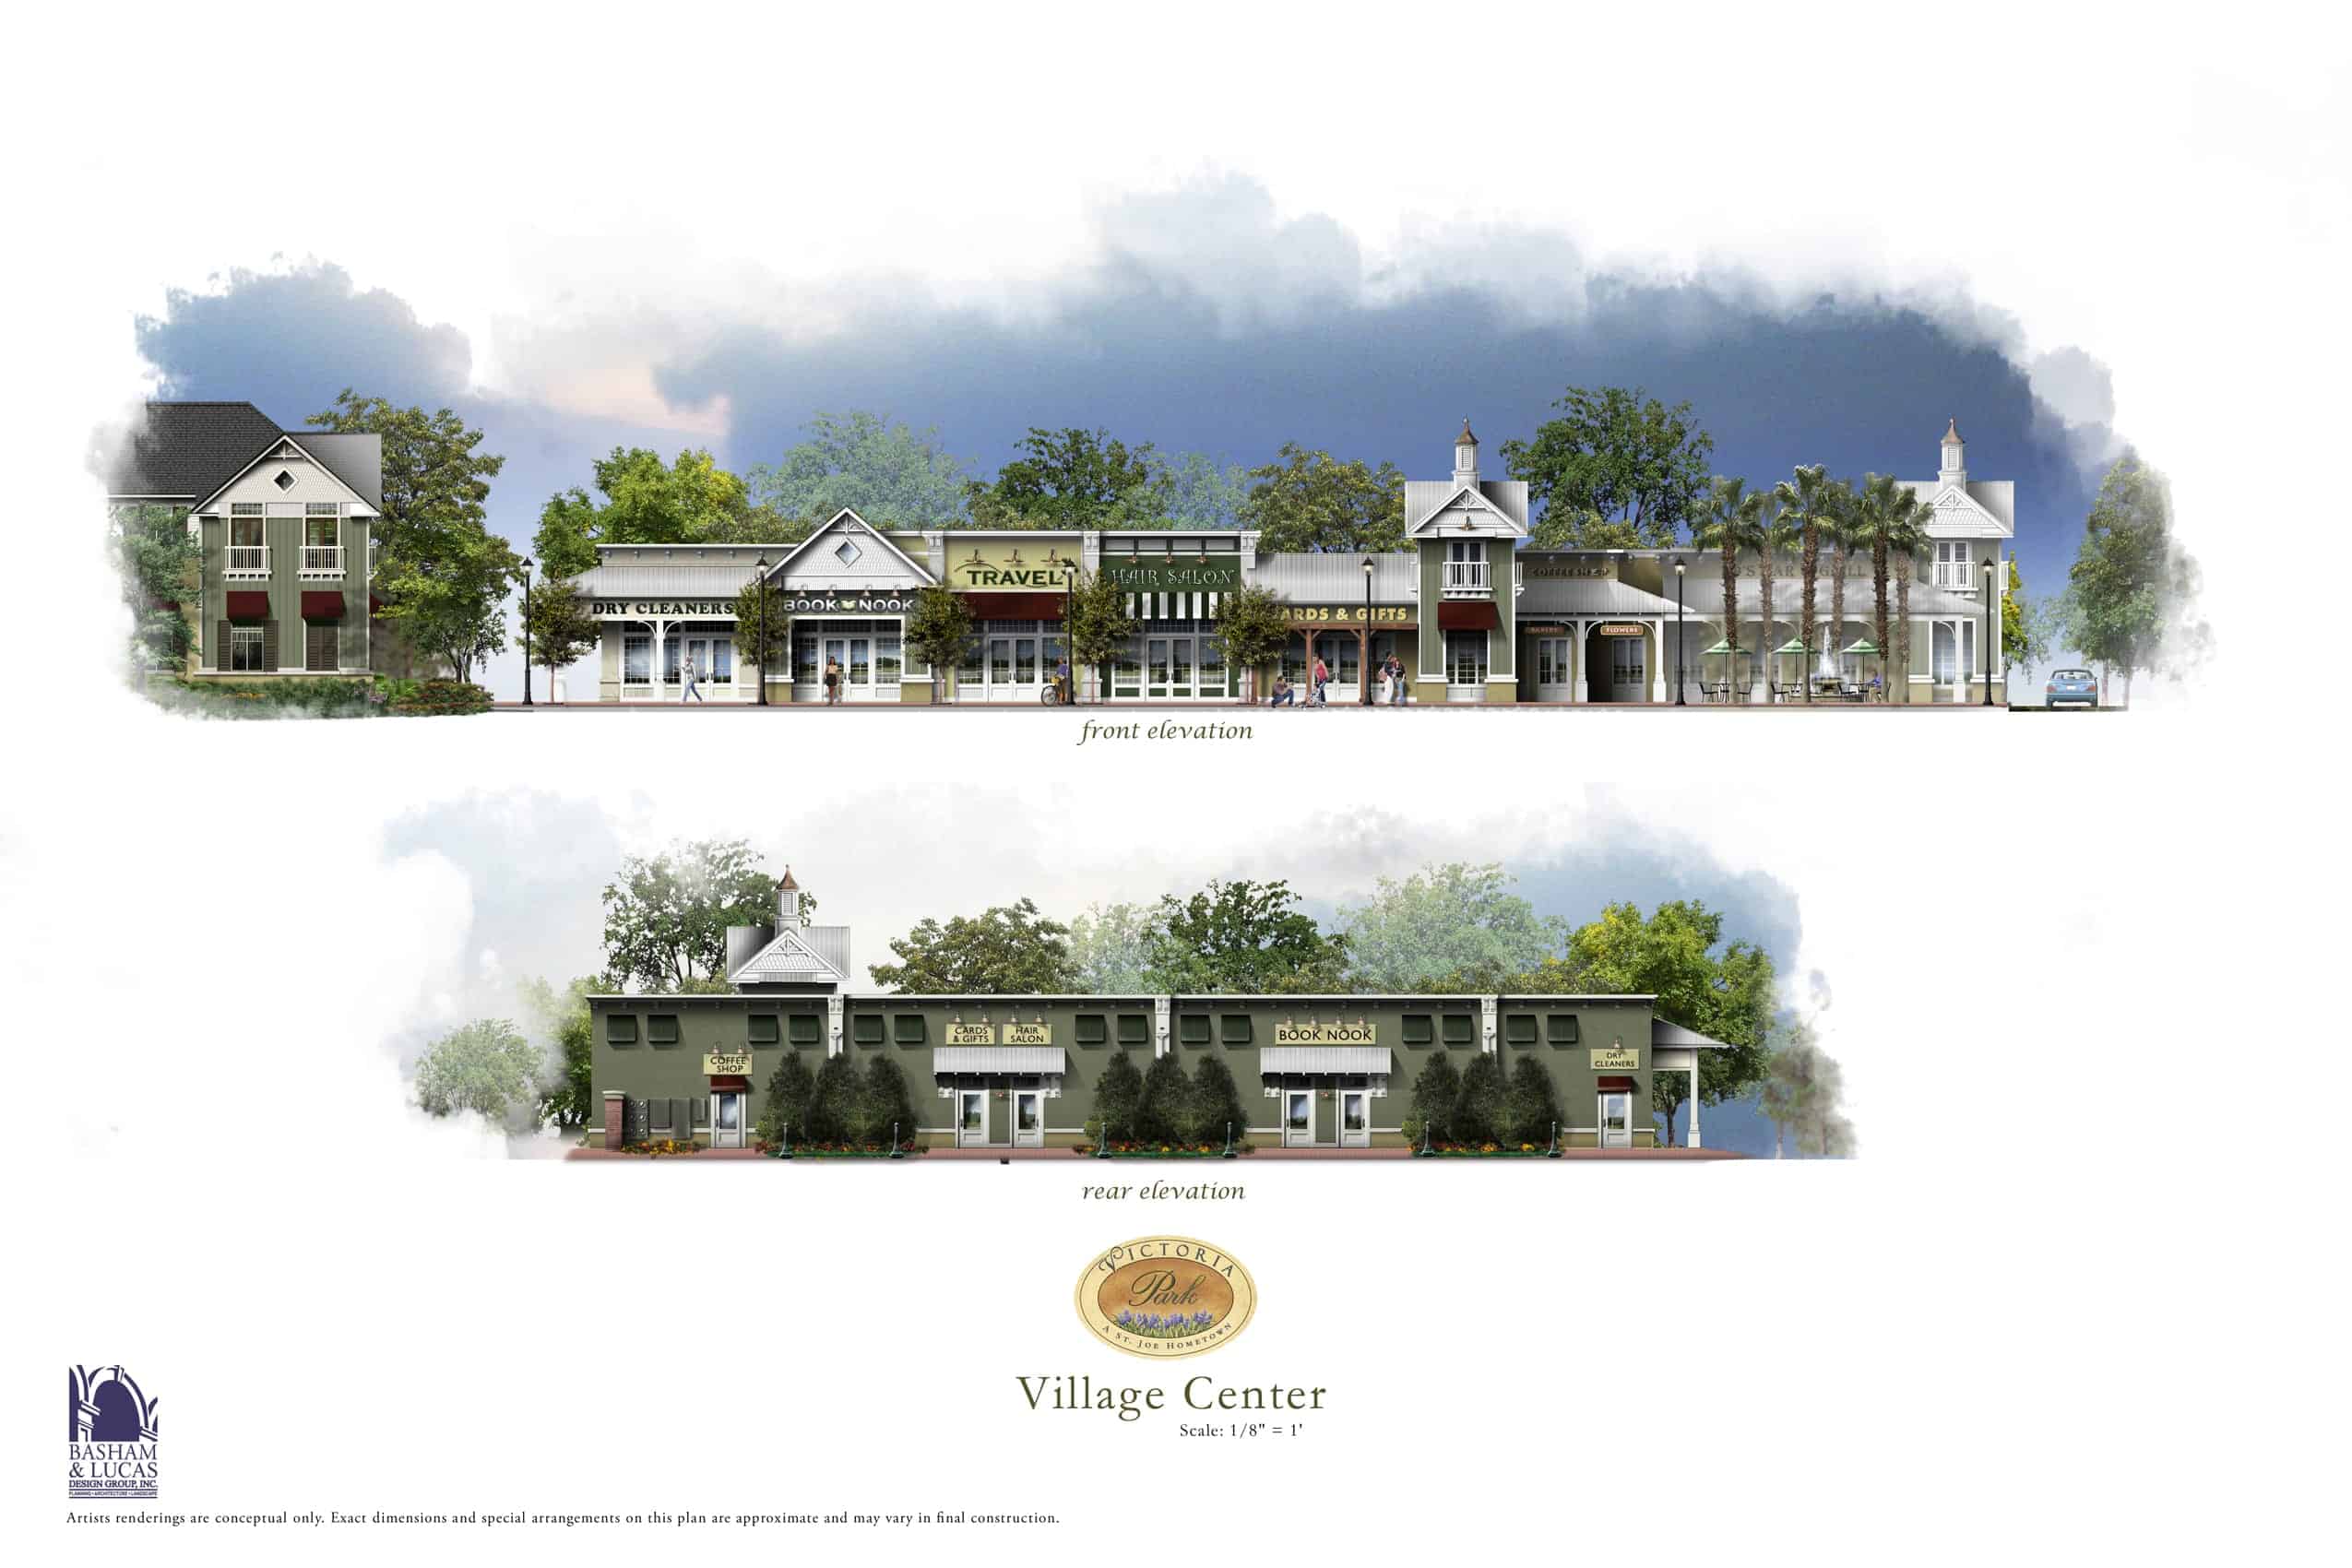 Village Center